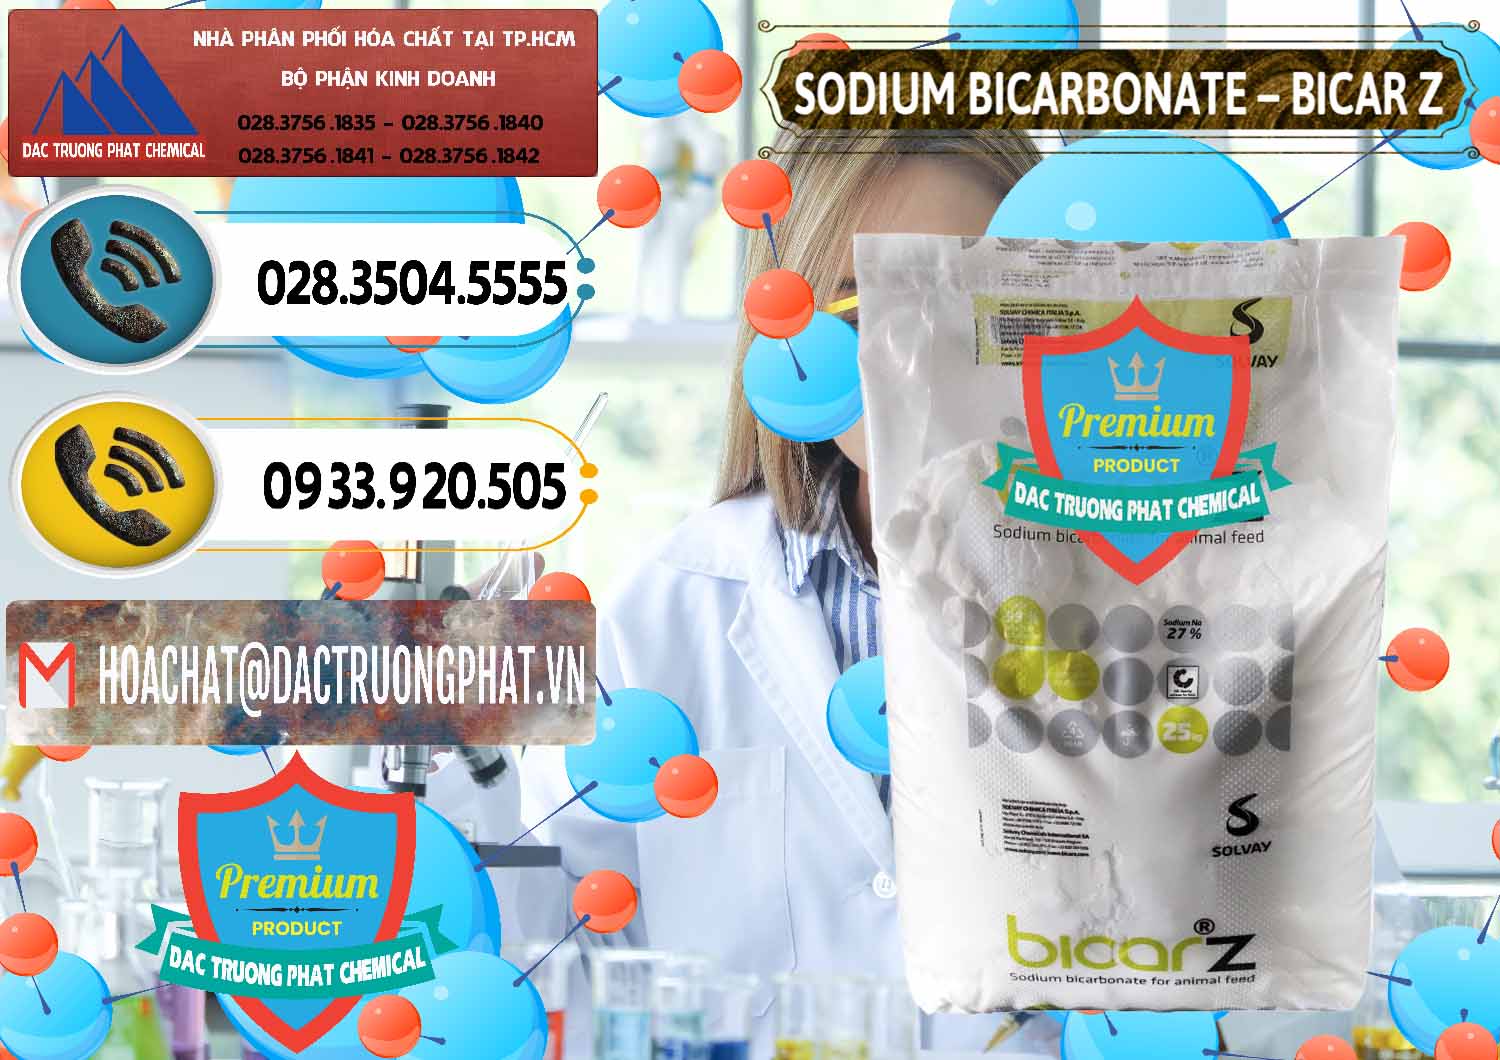 Công ty bán _ cung cấp Sodium Bicarbonate – NaHCO3 Bicar Z Ý Italy Solvay - 0139 - Nơi chuyên bán và phân phối hóa chất tại TP.HCM - hoachatdetnhuom.vn